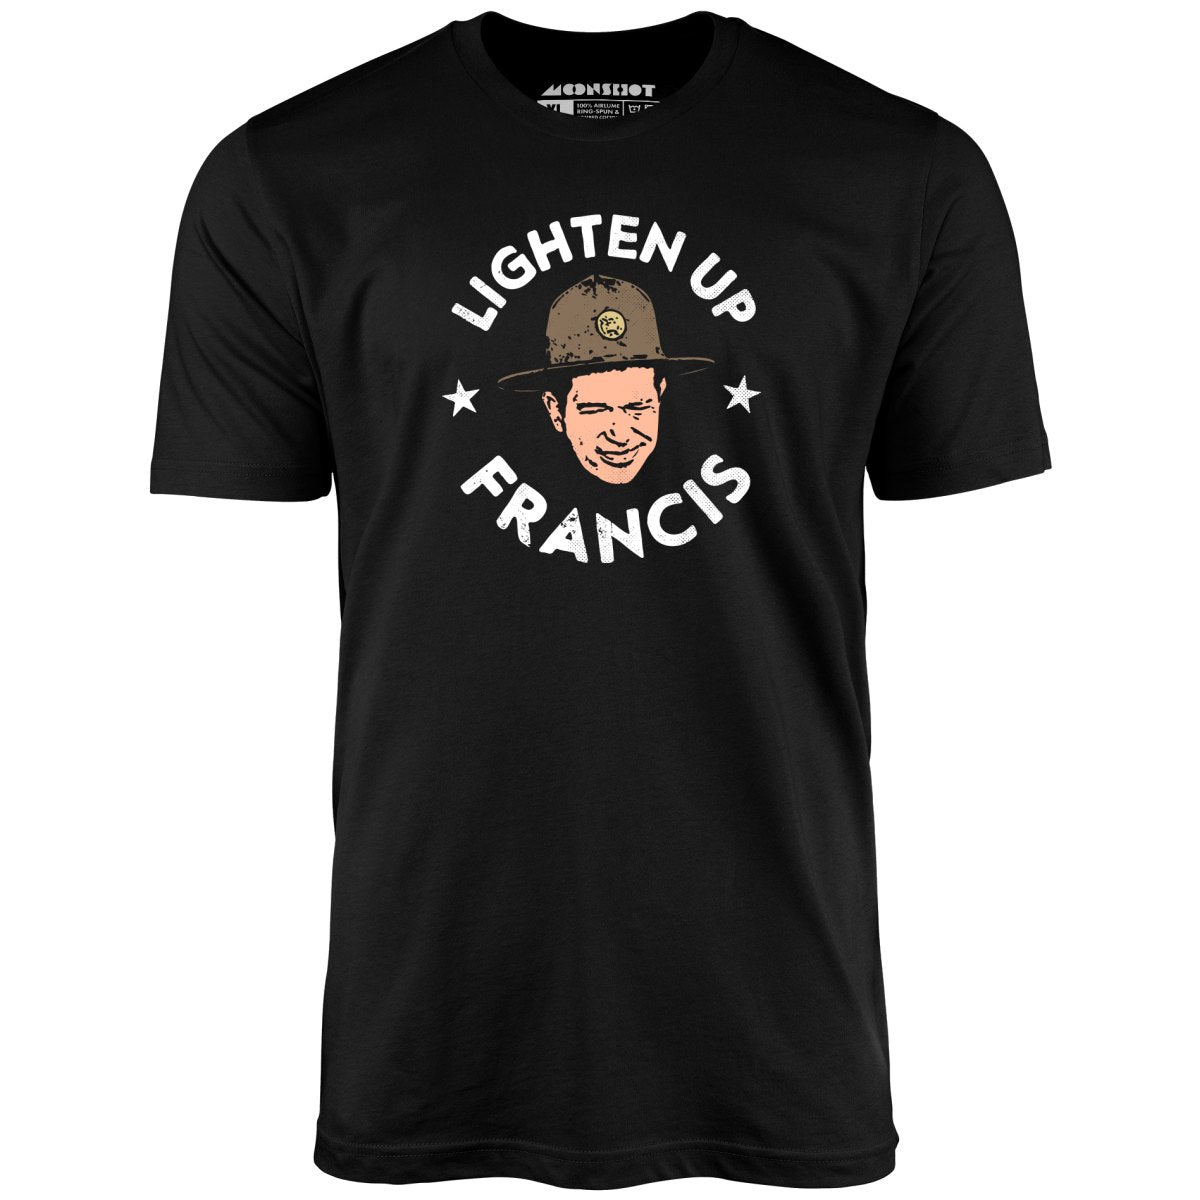 Lighten Up Francis - Unisex T-Shirt